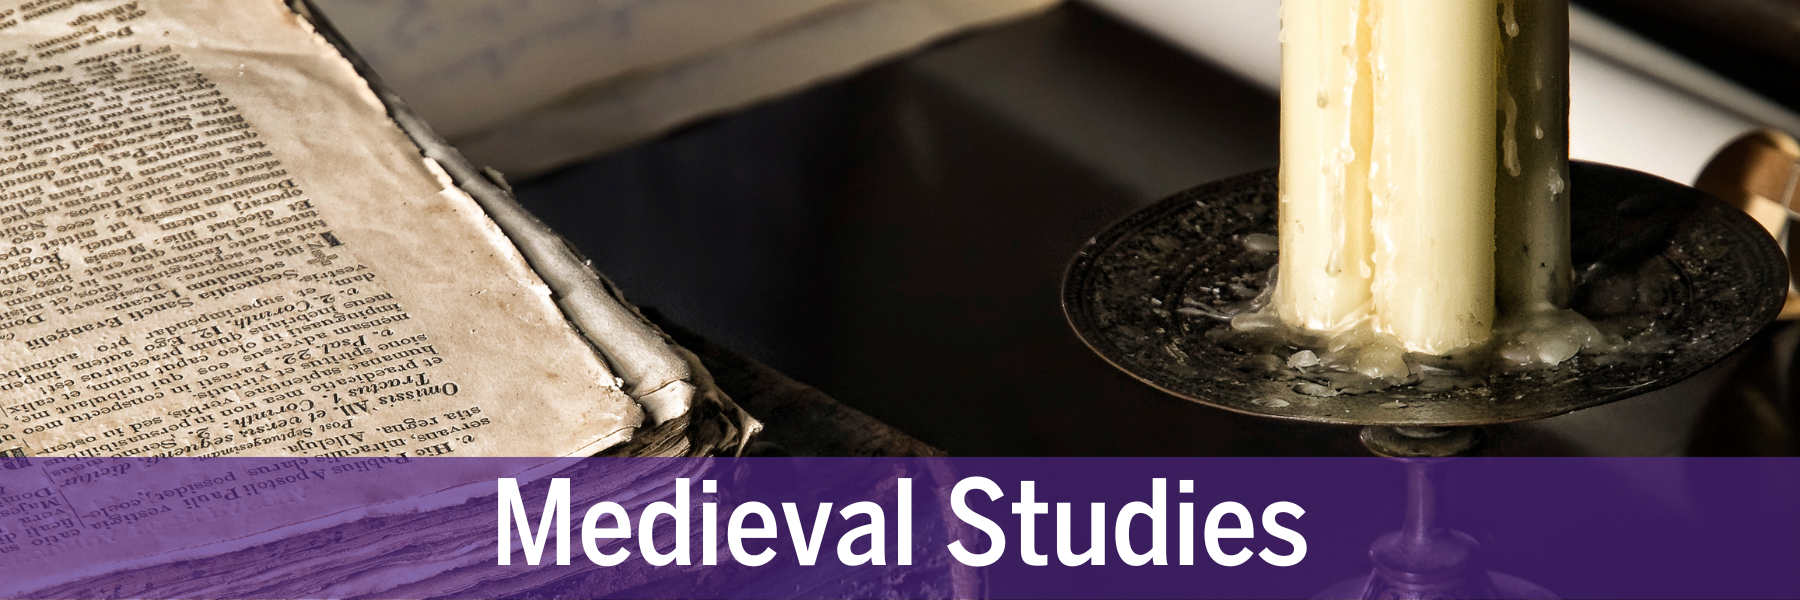 Medieval-Studies.png